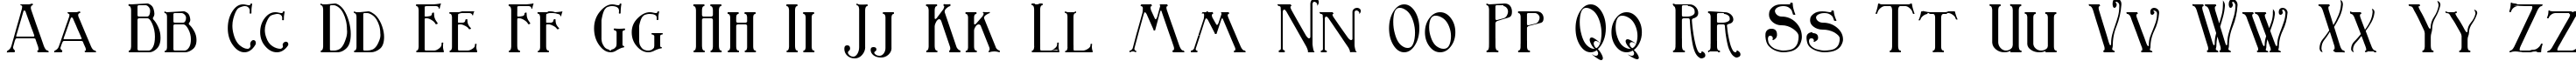 Пример написания английского алфавита шрифтом Birmingham